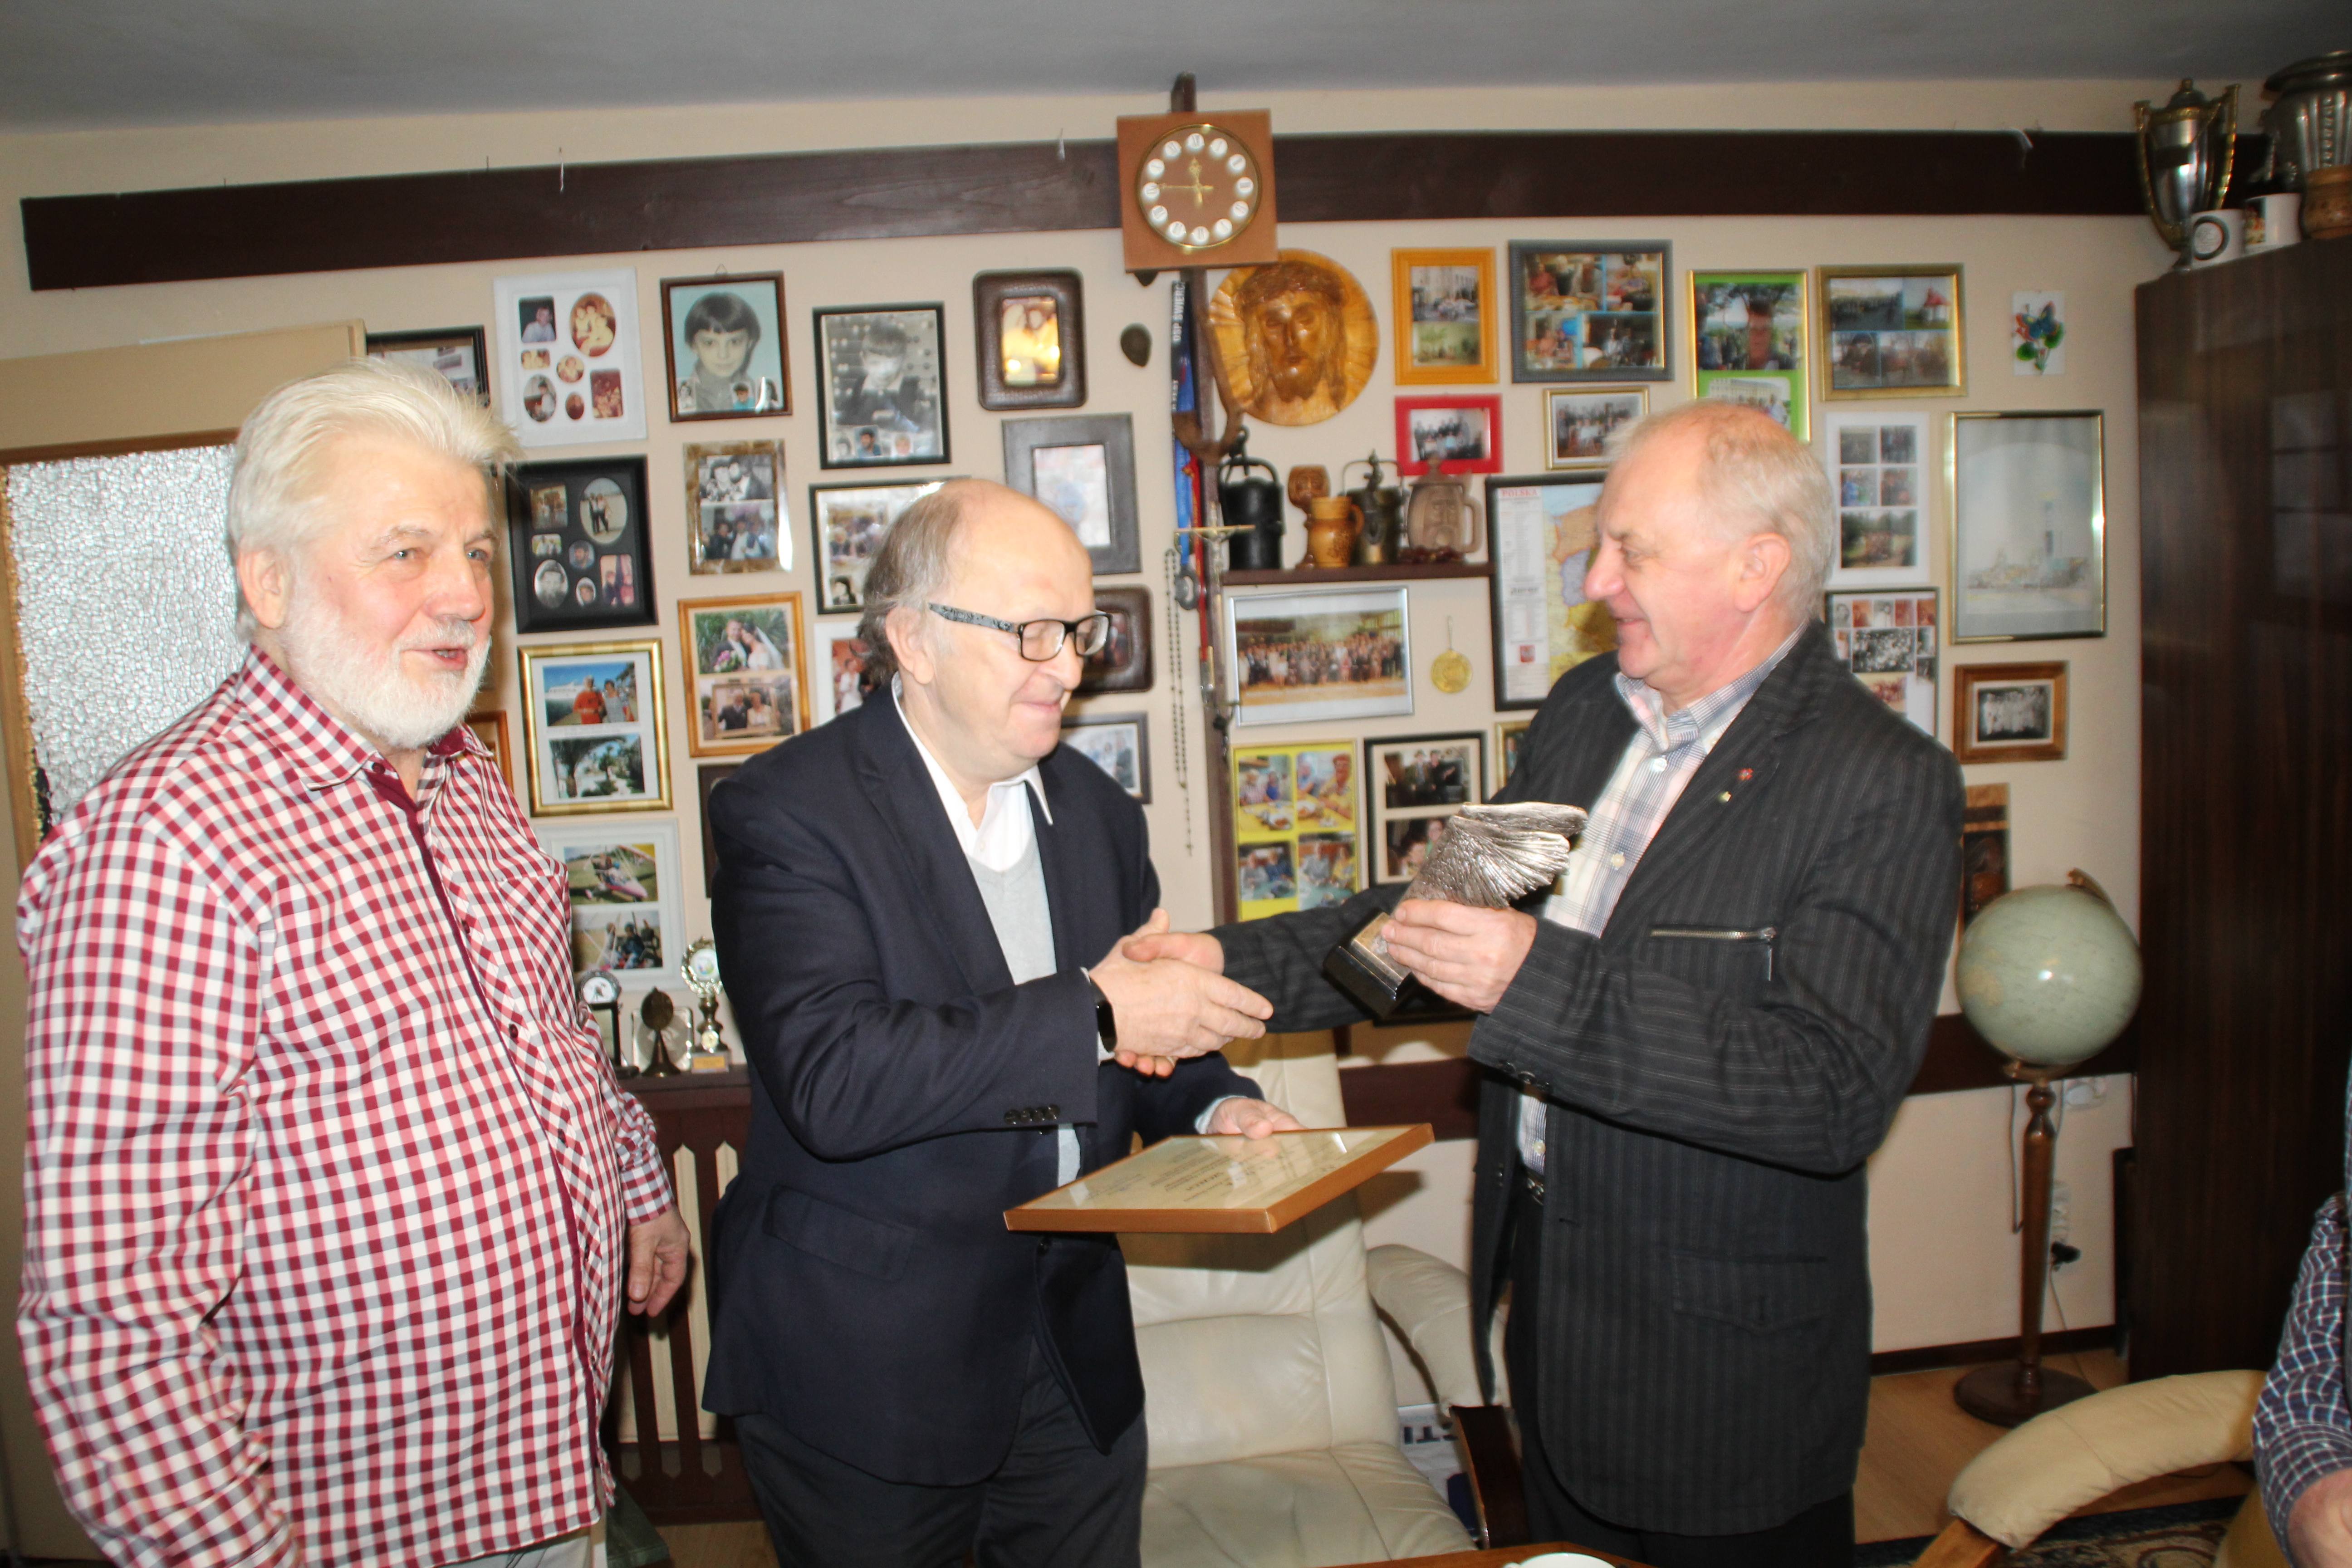 Wręczenie nagrody laureatowi, na zdjęcu trzech mężczyzn. Na środku stoi laureat, który ściska dłoń przedstawiciela organizatora nagrody